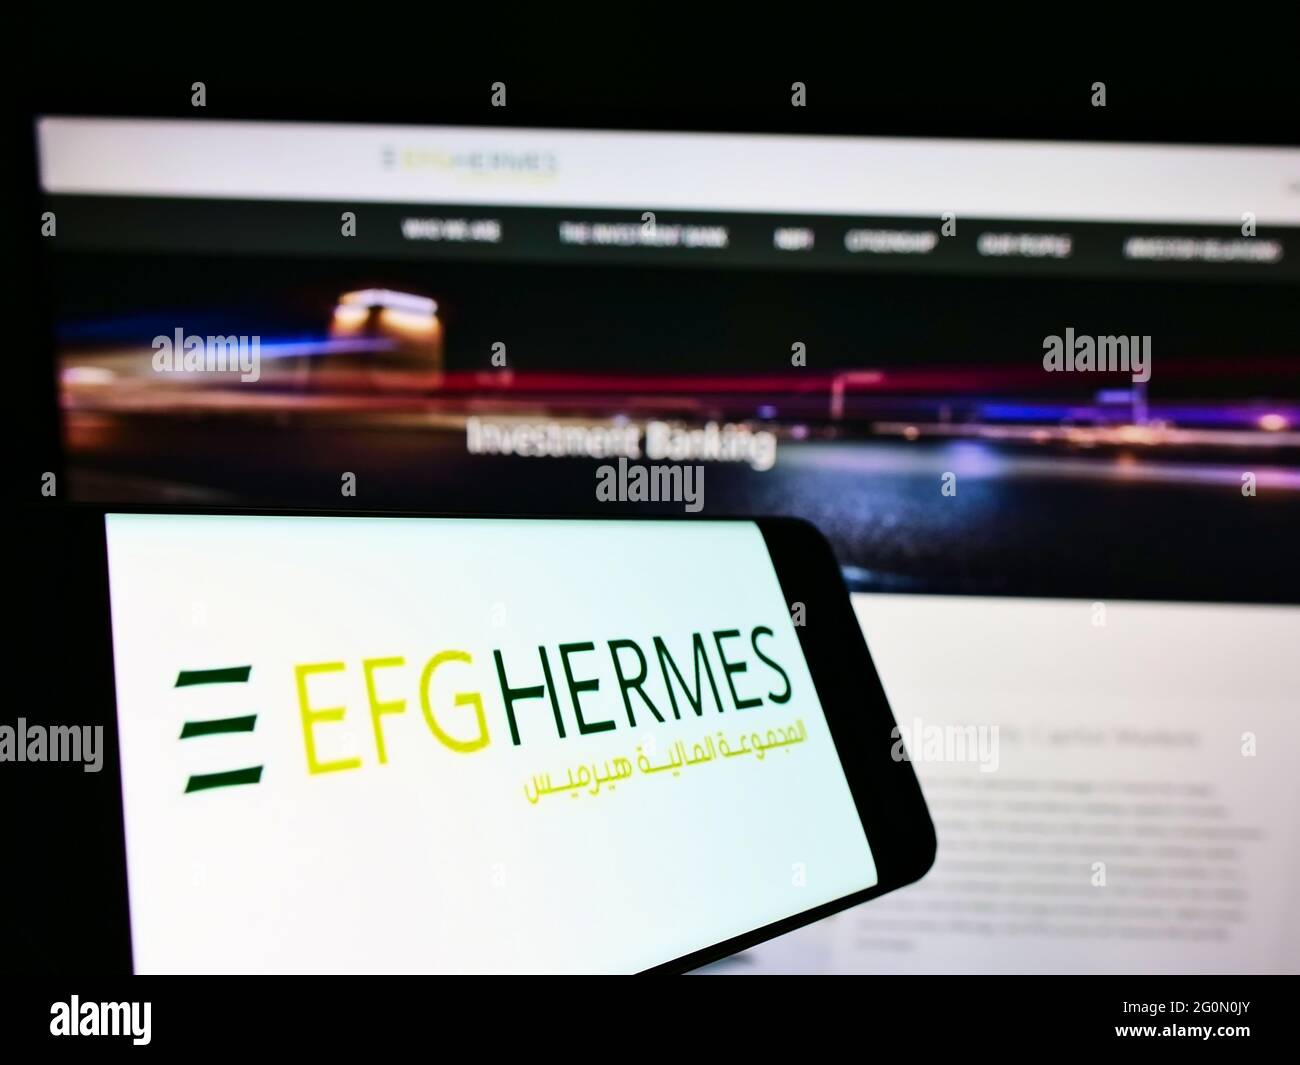 Smartphone avec logo de la société financière égyptienne EFG Hermes Holding S.A.E. sur écran en face de la page web. Effectuez la mise au point au centre-droit de l'écran du téléphone. Banque D'Images